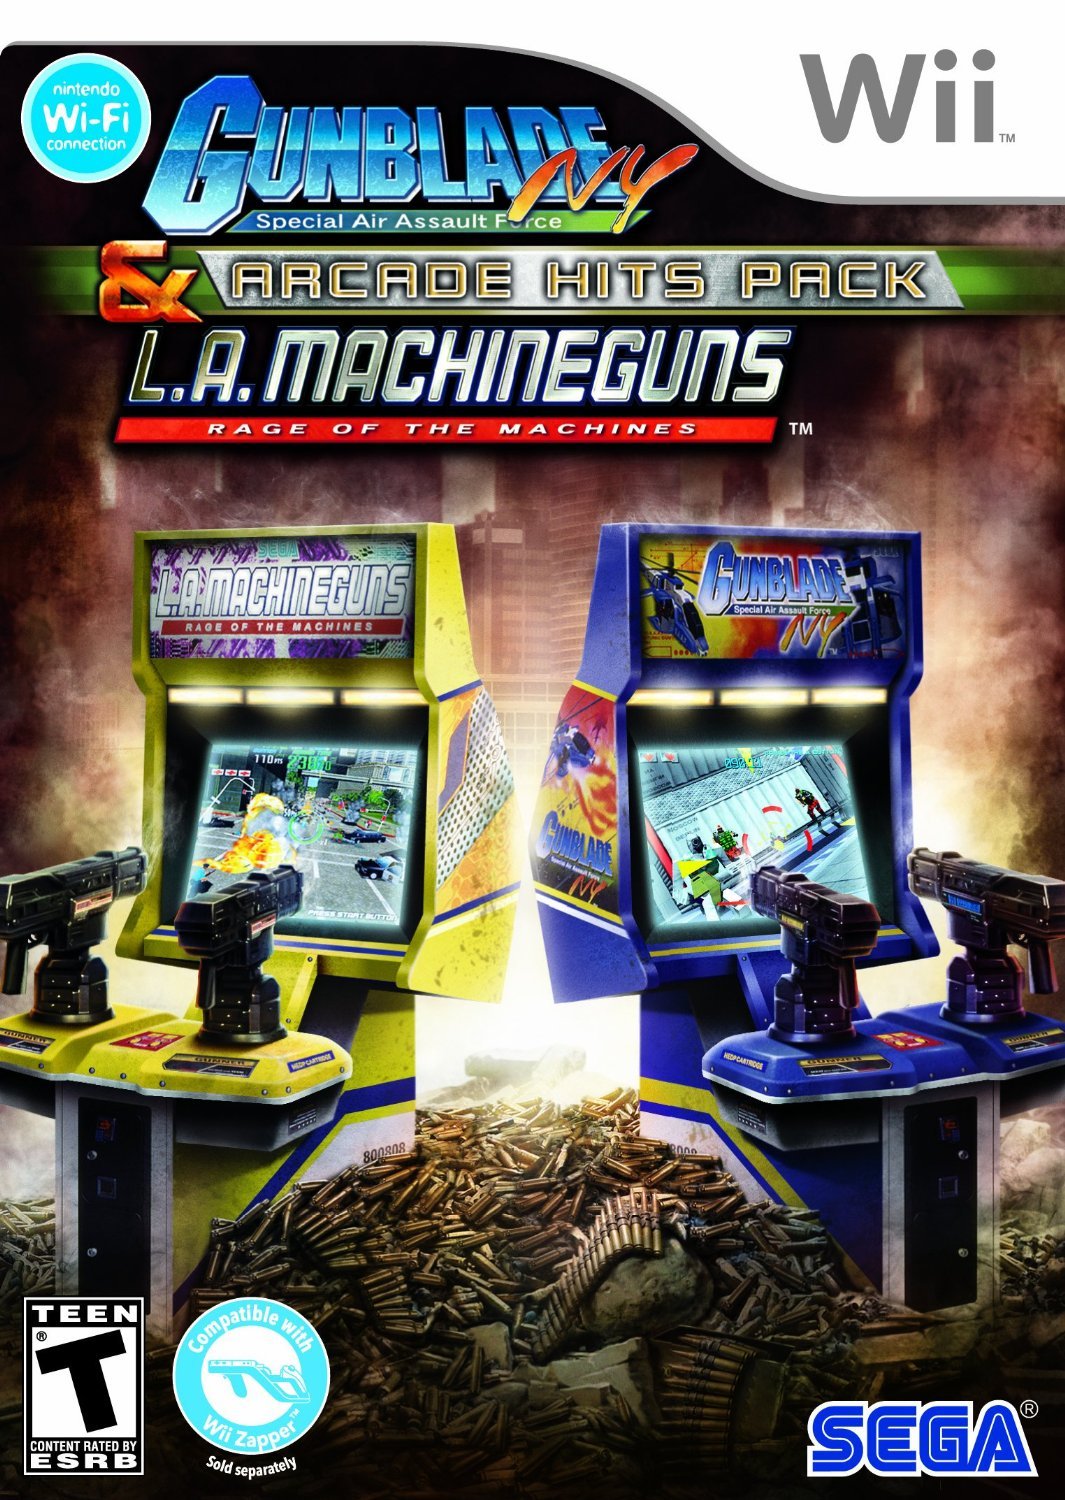 Image of Arcade Hits Pack: Gunblade NY and L.A. Machineguns